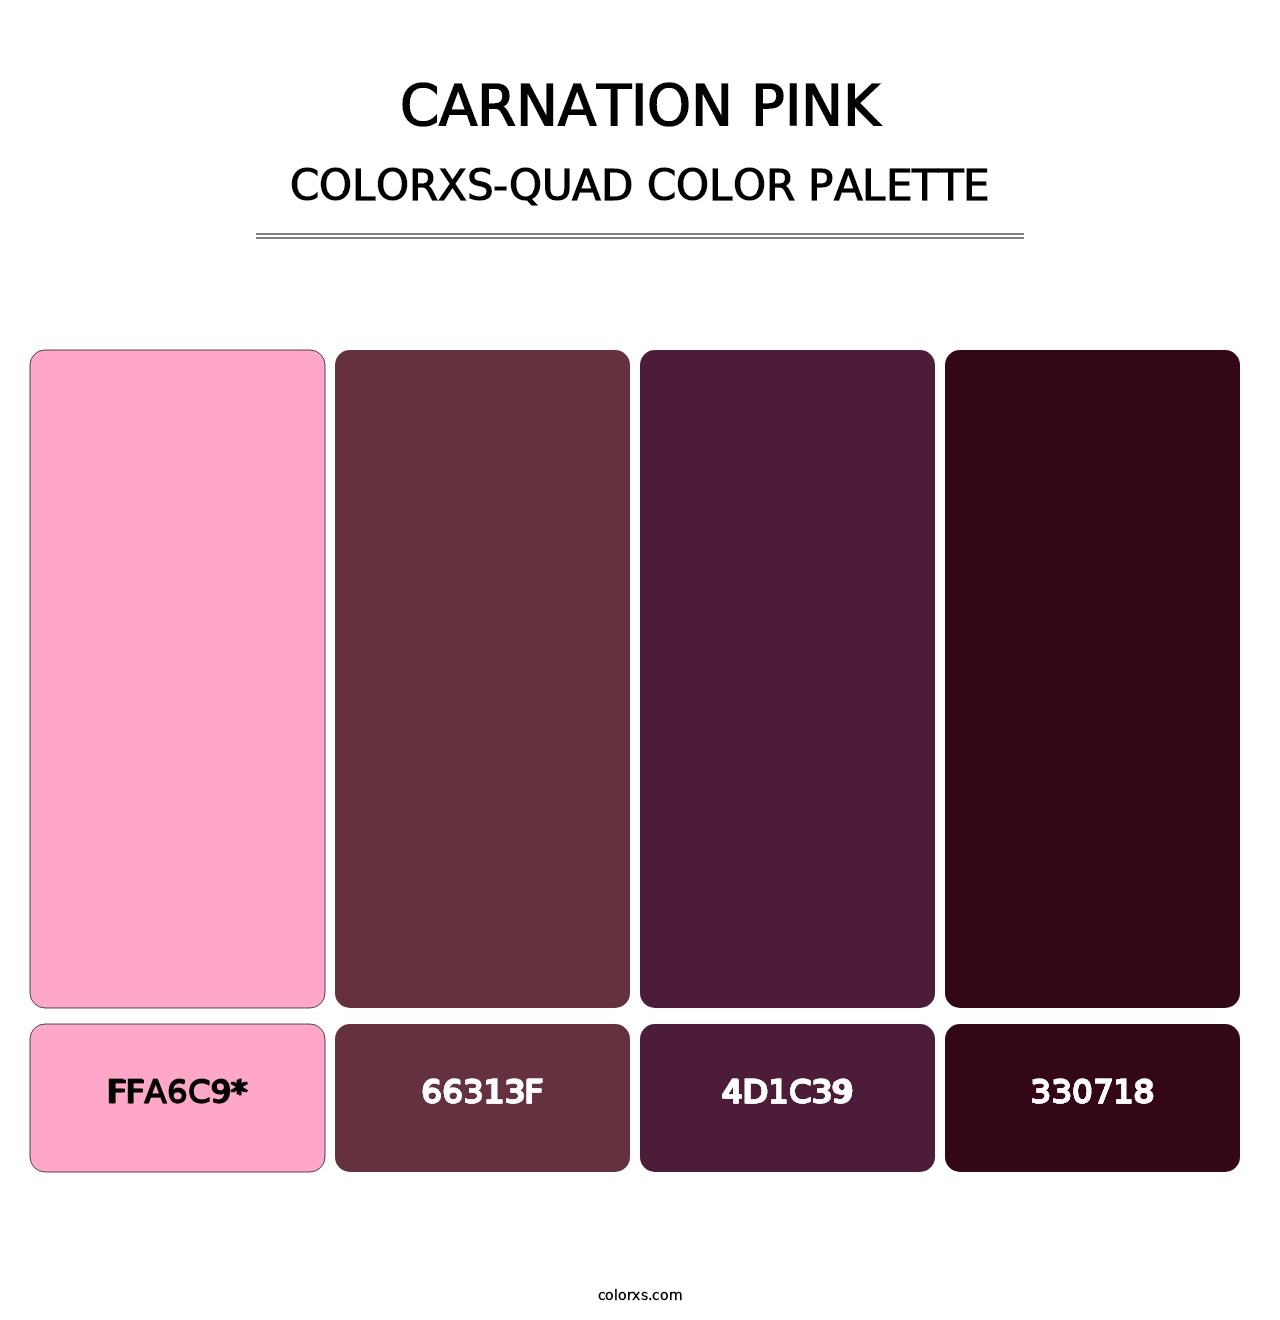 Carnation Pink - Colorxs Quad Palette